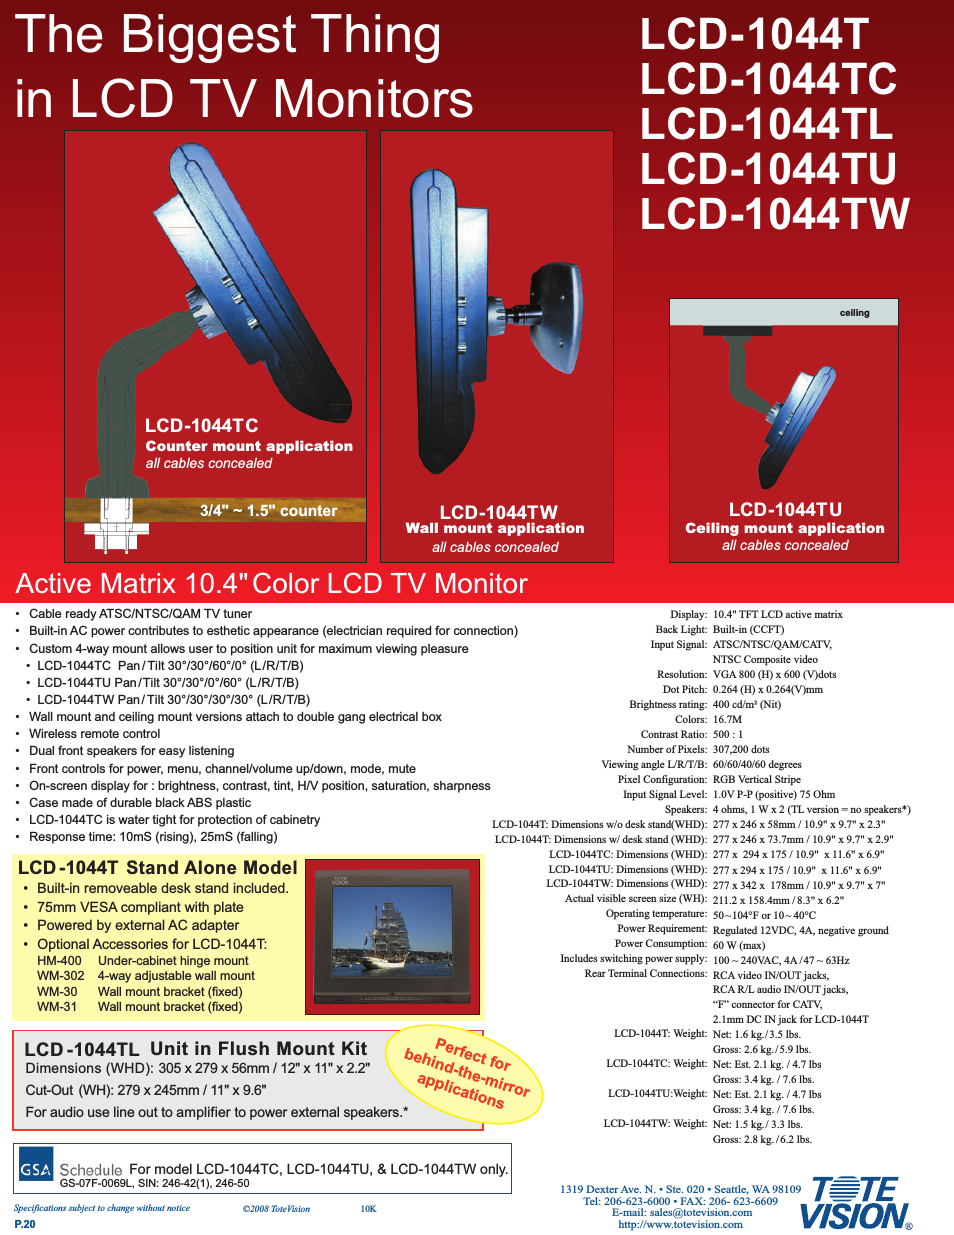 LCD-1044TU